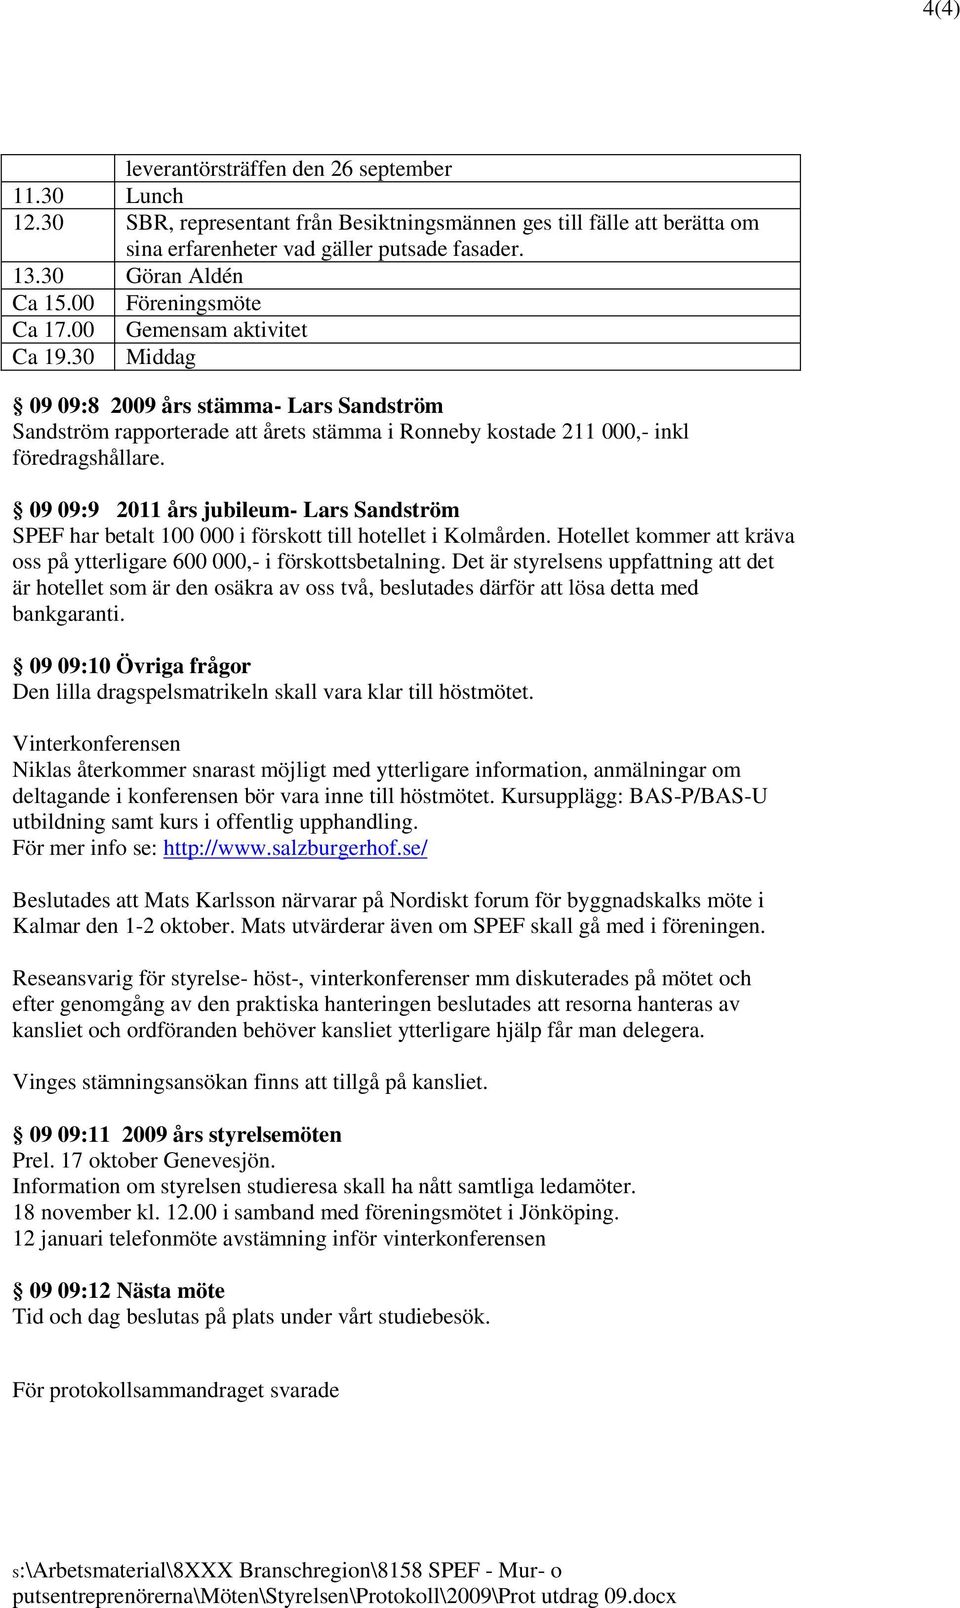 09 09:9 2011 års jubileum- Lars Sandström SPEF har betalt 100 000 i förskott till hotellet i Kolmården. Hotellet kommer att kräva oss på ytterligare 600 000,- i förskottsbetalning.